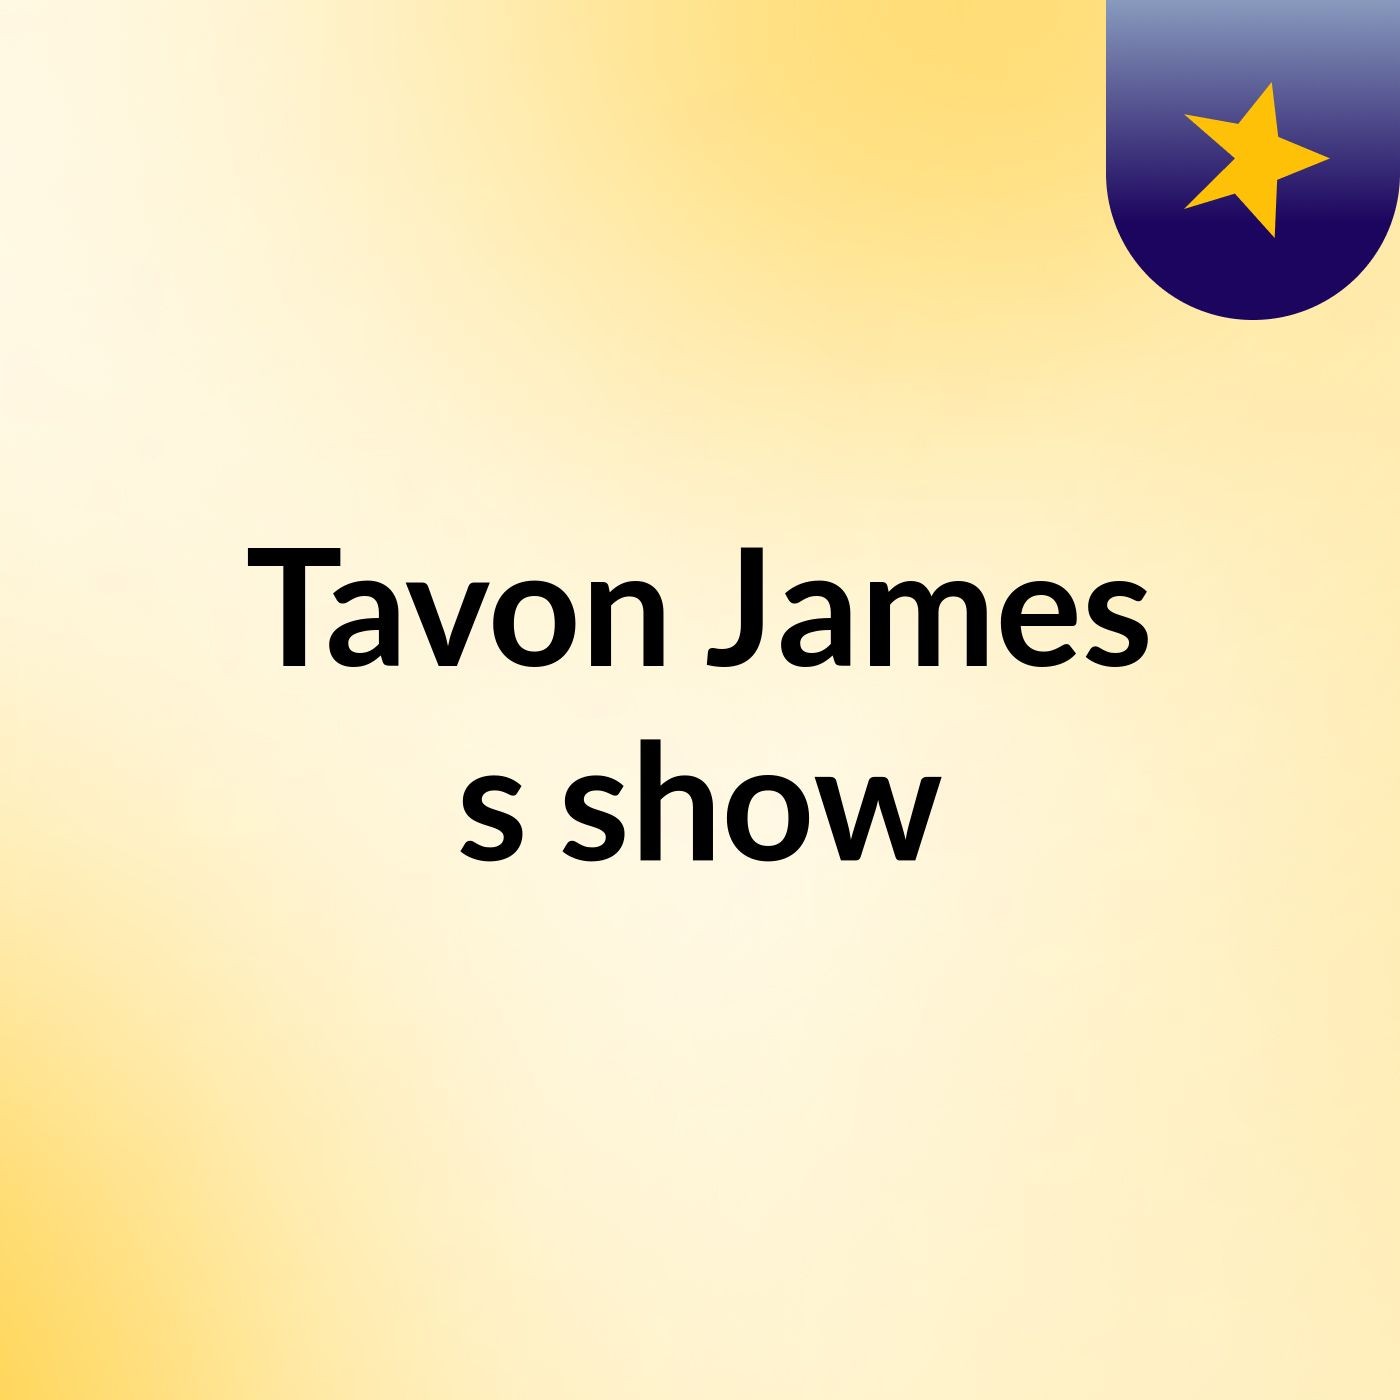 Tavon James's show